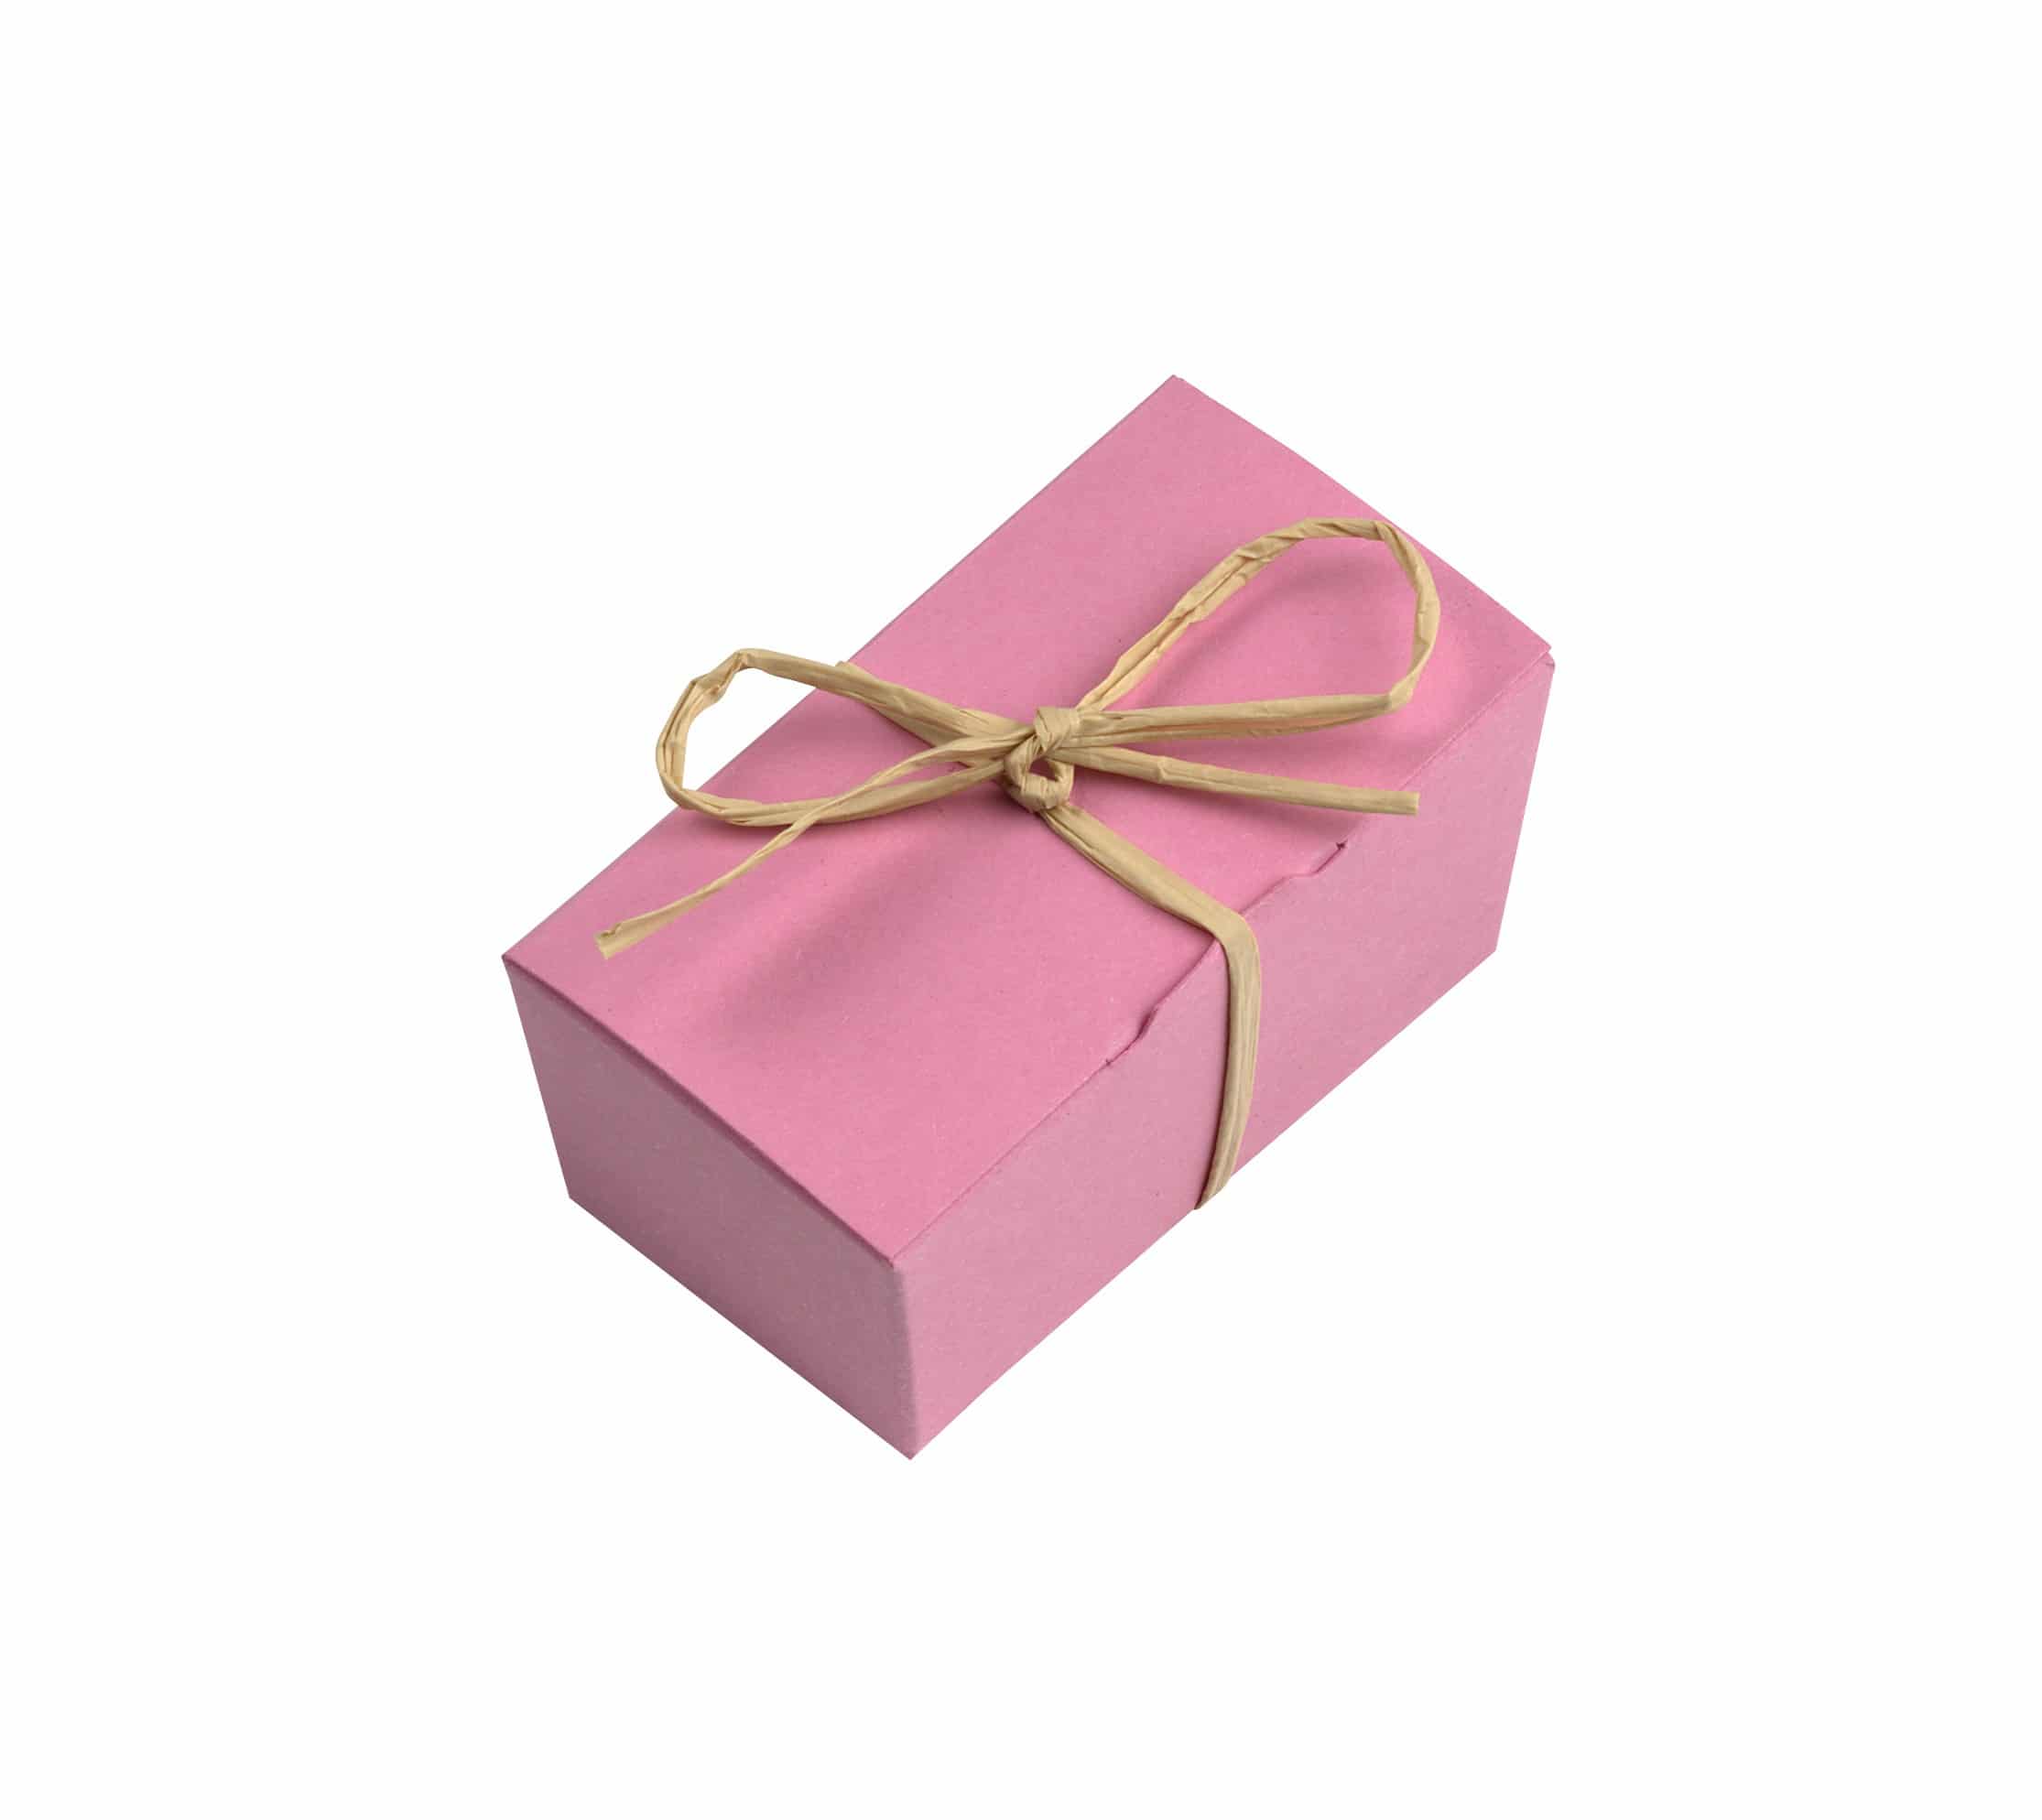 2er Schatulle "Rosenzauber" von Schell Schokoladen hat eine pinke Verpackung mit einer pinken Schleife an einem Strohband.